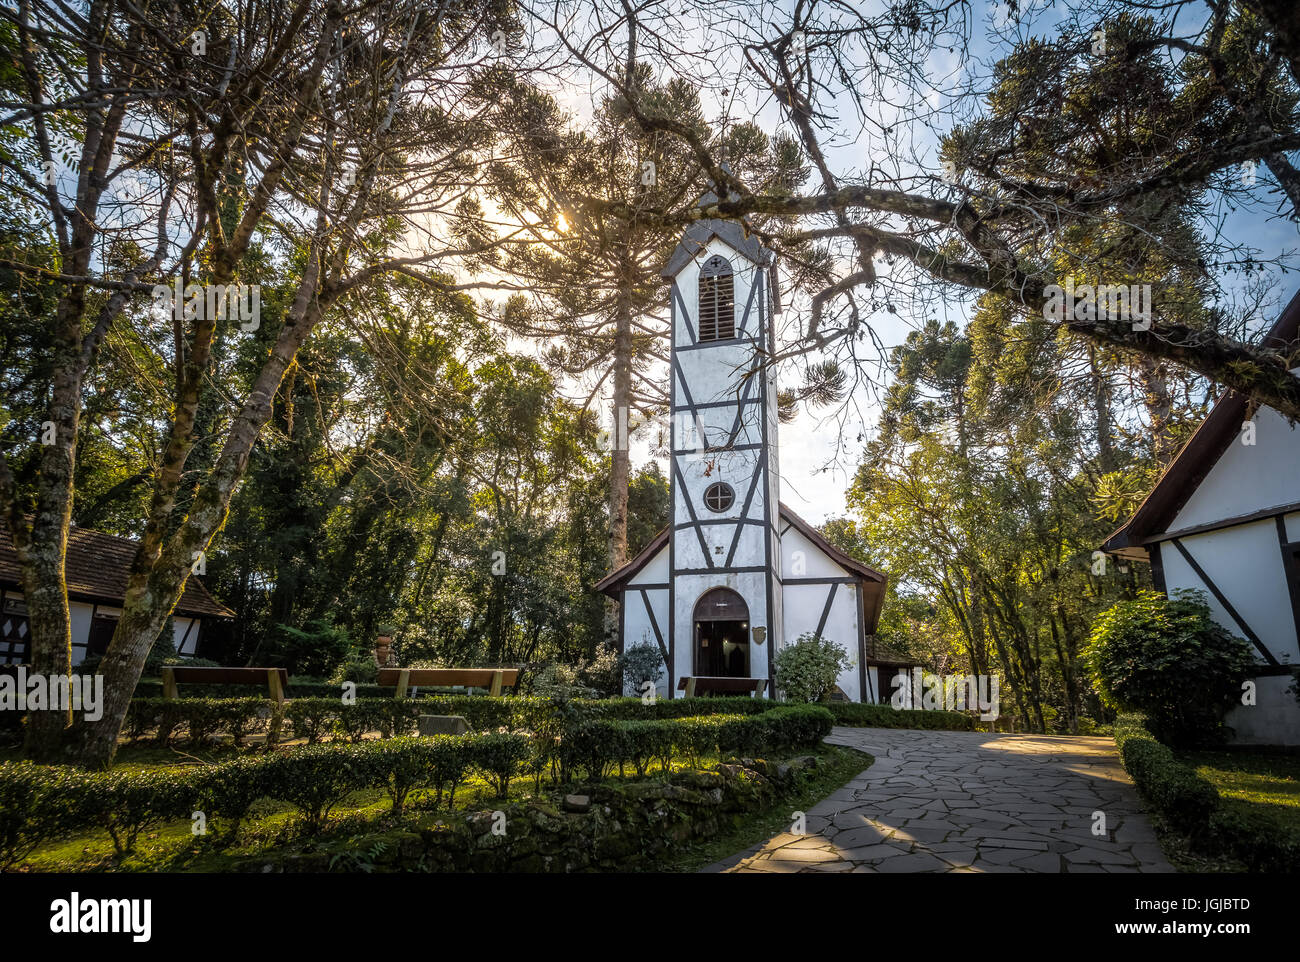 L'église de style Fachwerk allemand et maisons au Village d'immigrants Park (Parque Aldeia do Imigrante) - Nova Petropolis, Rio Grande do Sul, Brésil Banque D'Images